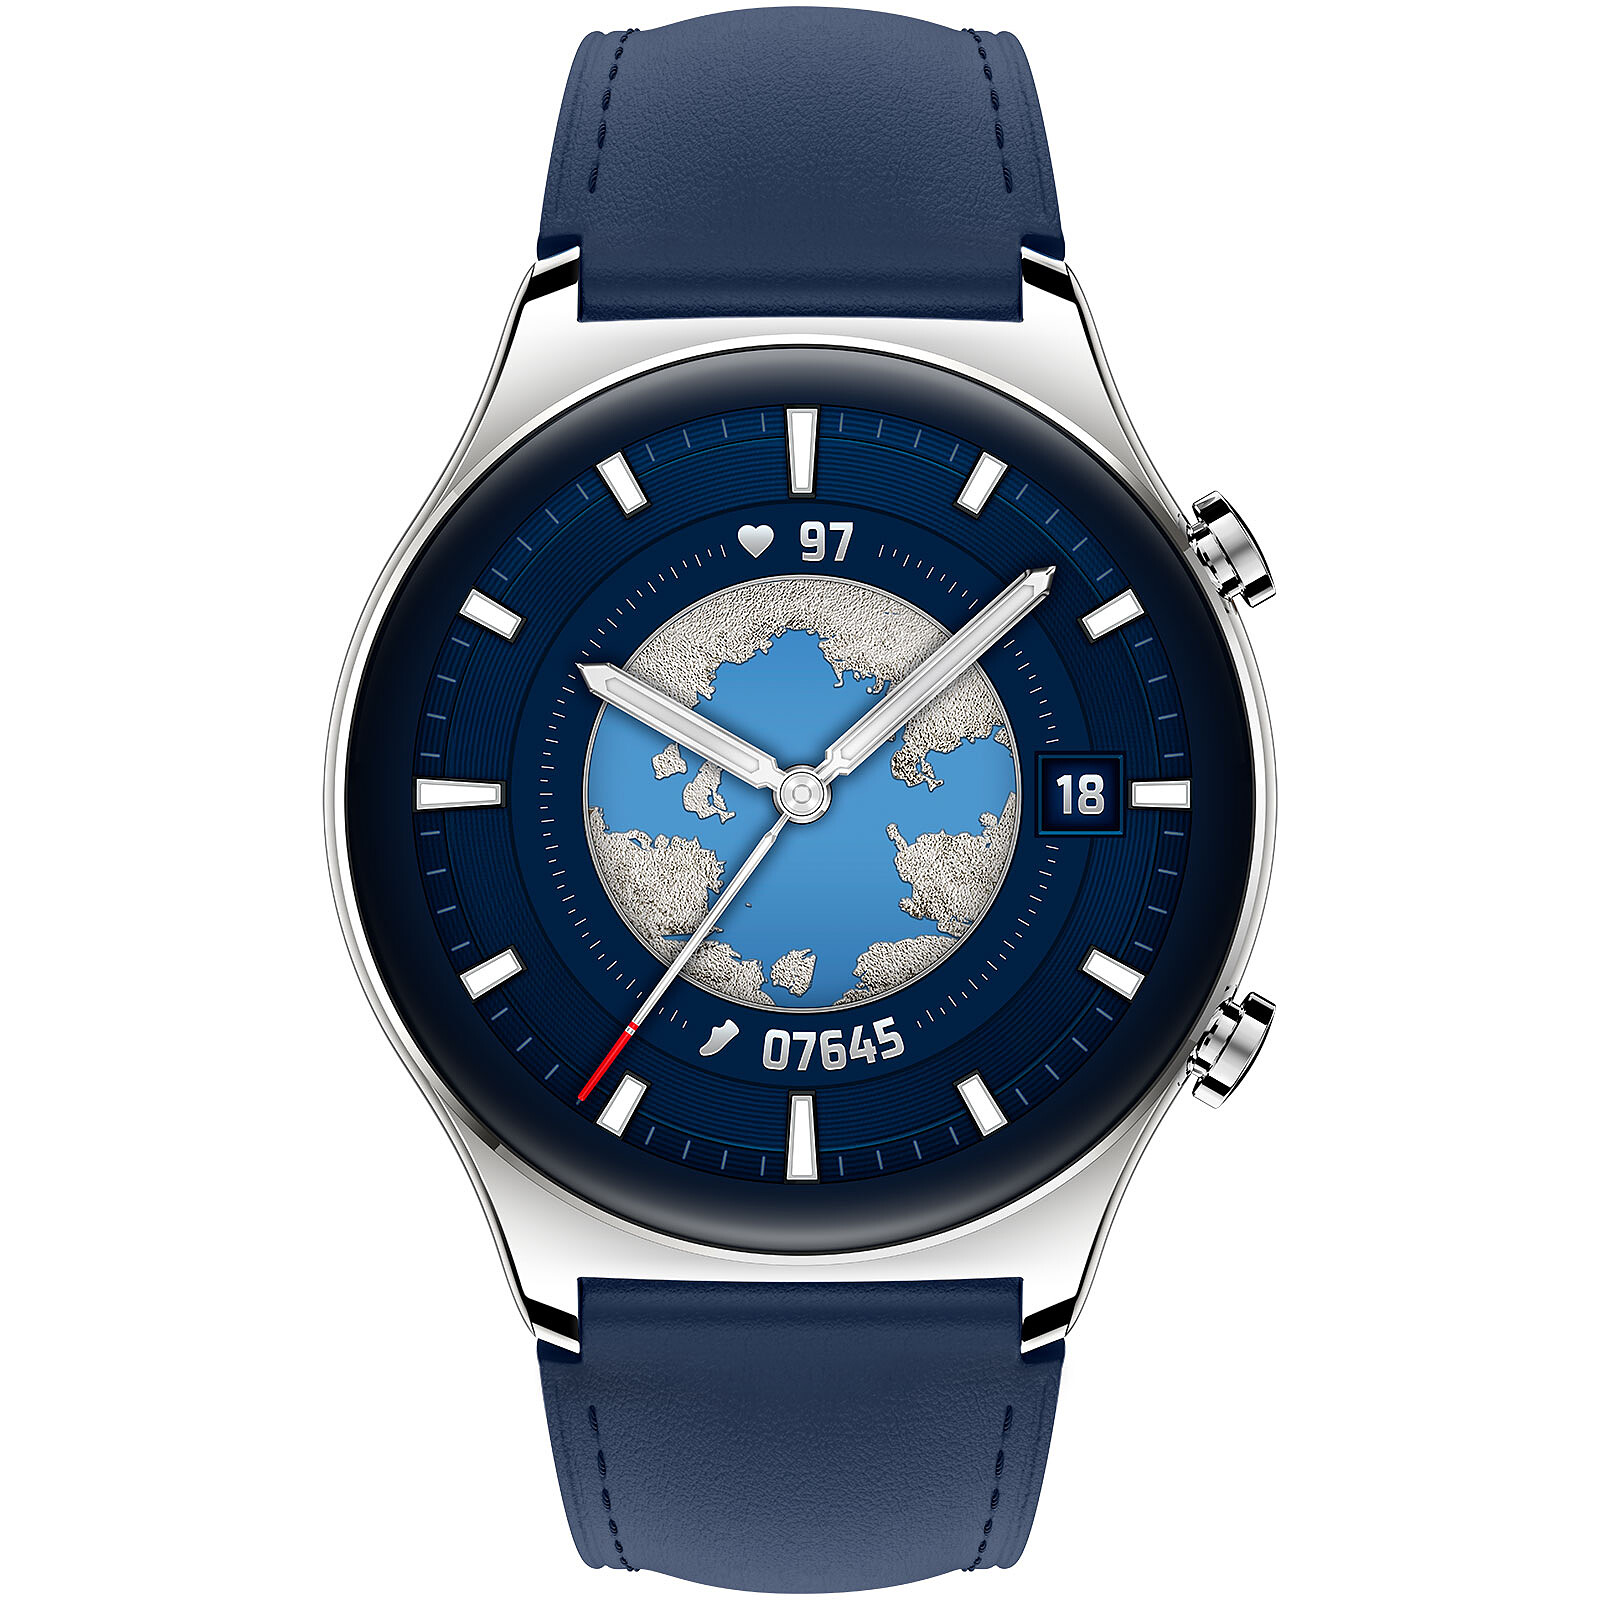 Honor Watch GS 3 Bleu - Montre connectée - Garantie 3 ans LDLC